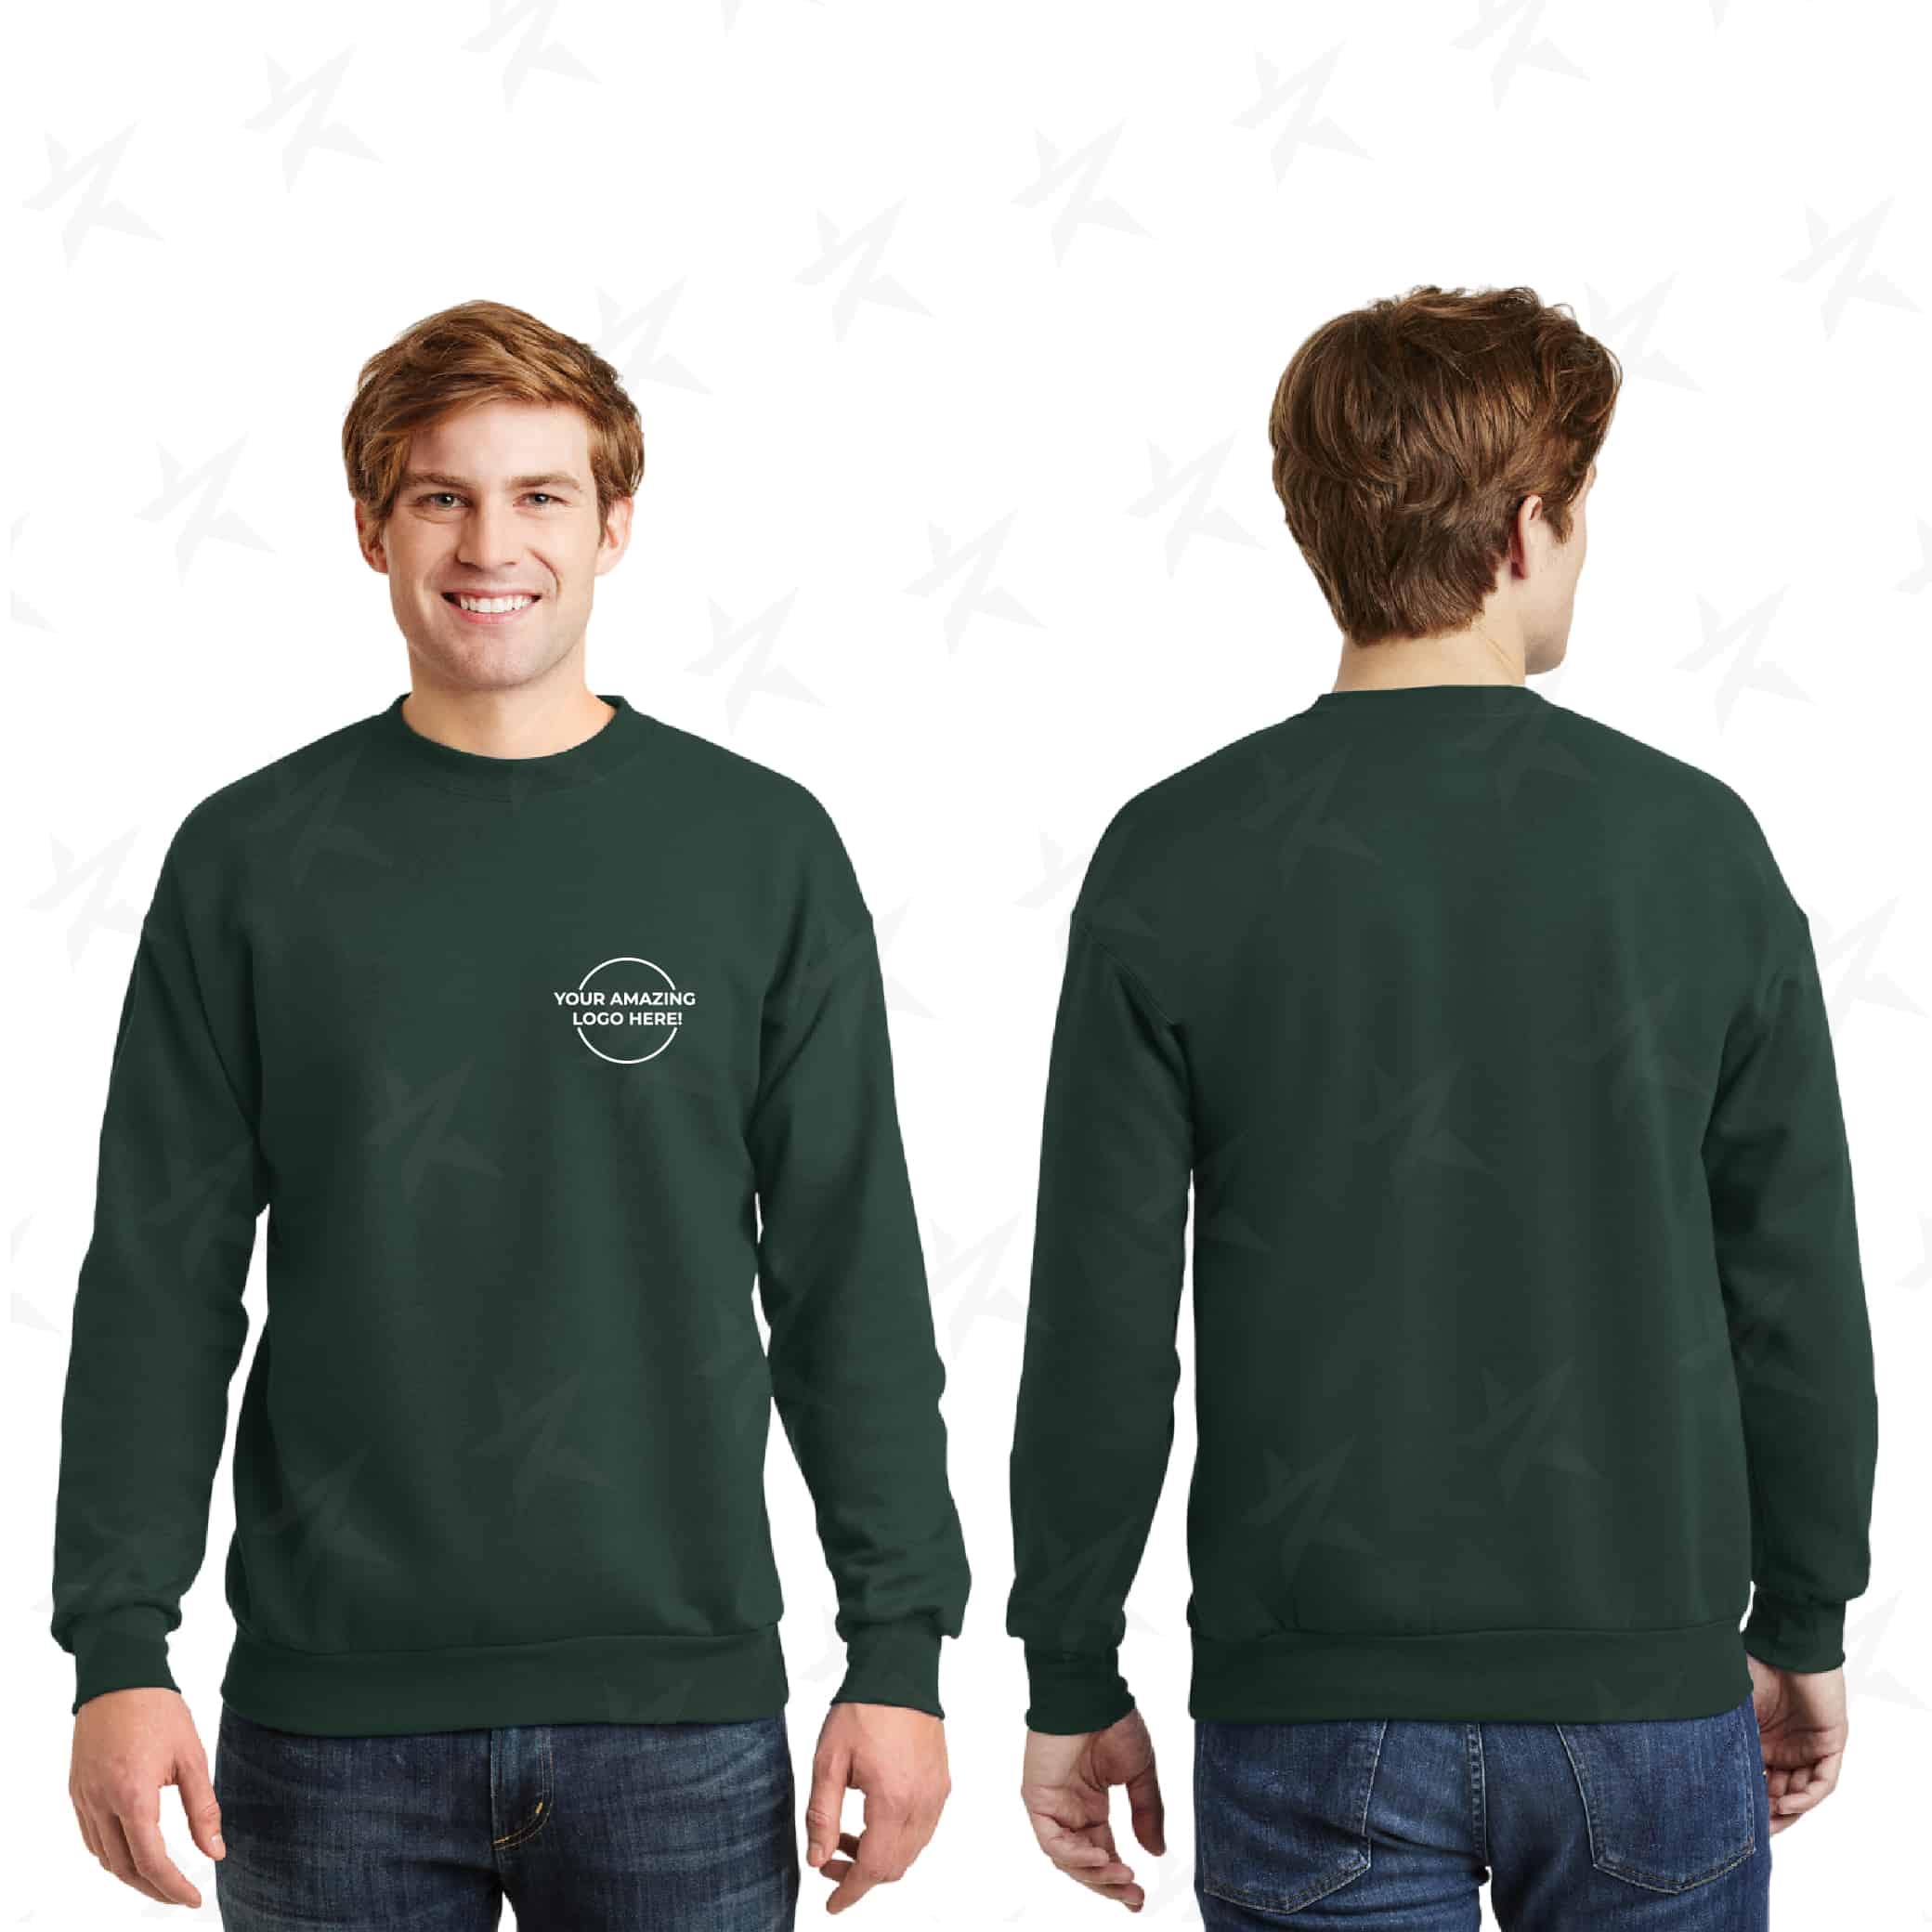 ecosmart-crewneck-sweatshirt-for-promo